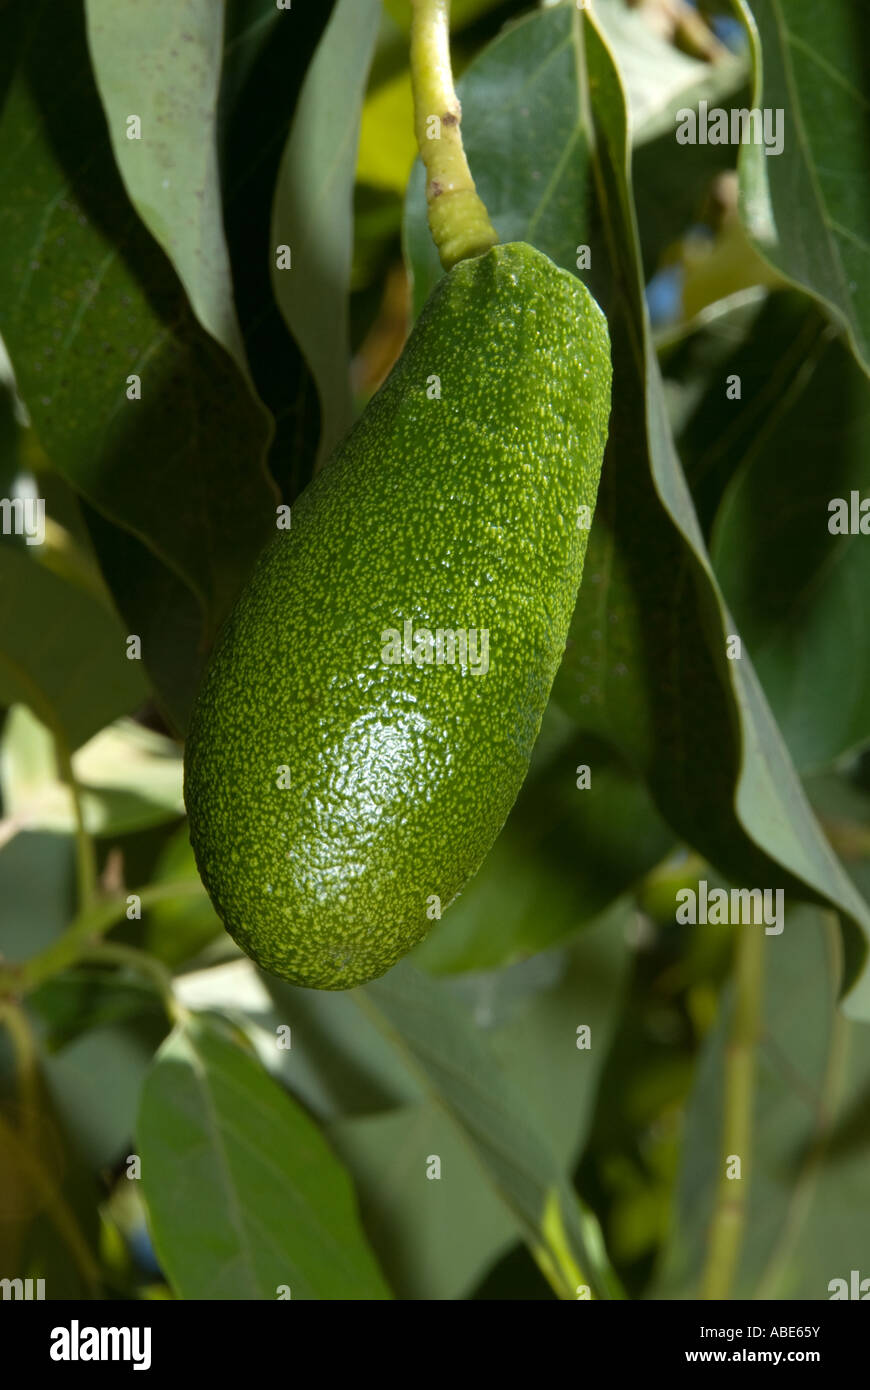 Avocado pear ripening on the tree Stock Photo